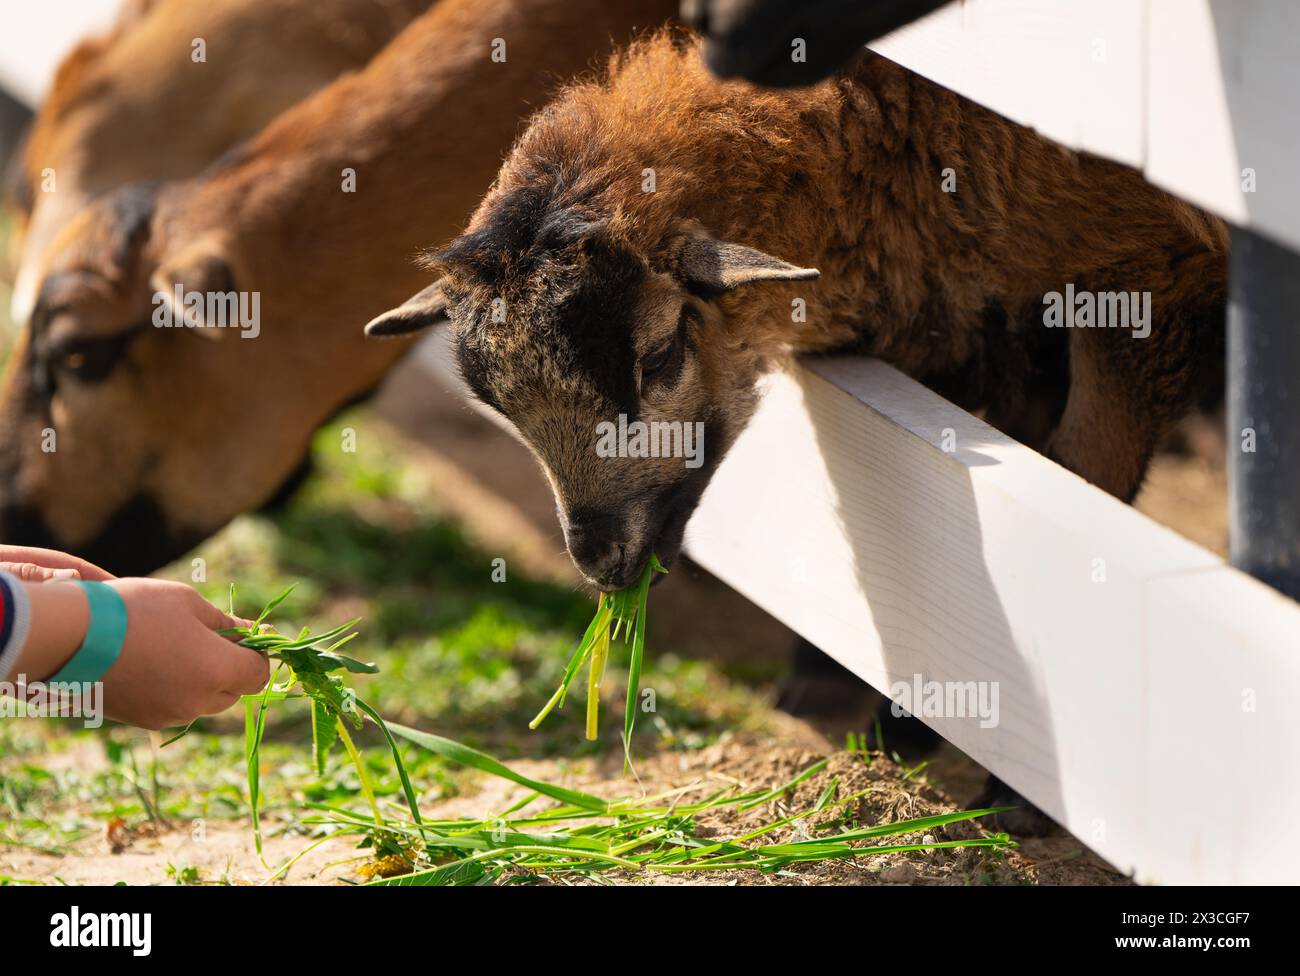 Ein Junge füttert ein braunes kamerunisches Schafgras in einem Streichelzoo. Näher an Tieren und Natur. Nahaufnahme Stockfoto